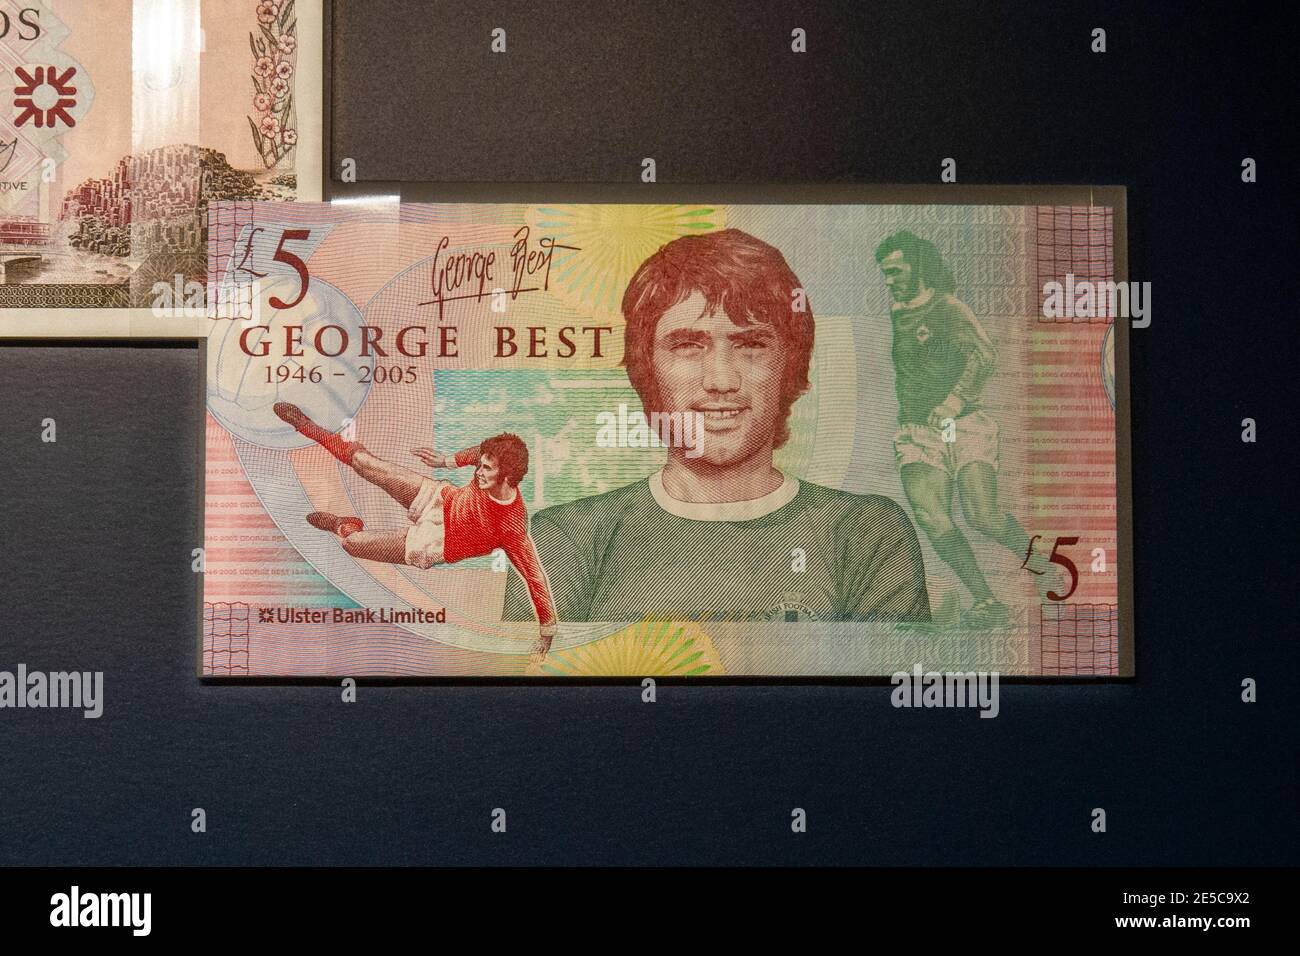 Ulster Bank Ltd cinque sterline note commemorare la leggenda del calcio George Best, The Money Gallery, Ashmolean Museum, Oxford, UK. Foto Stock